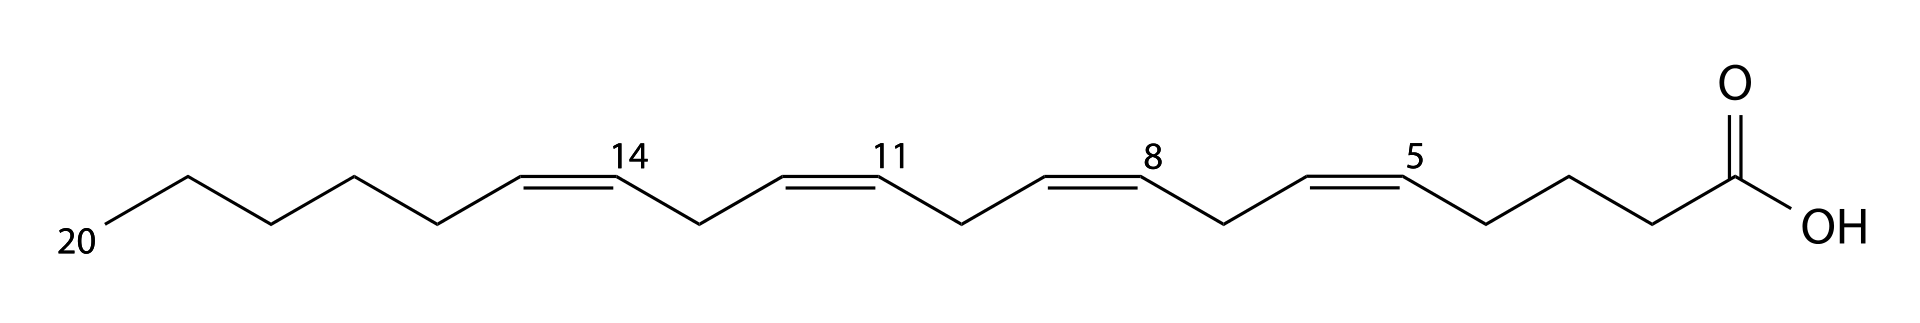 アラキドン酸の構造